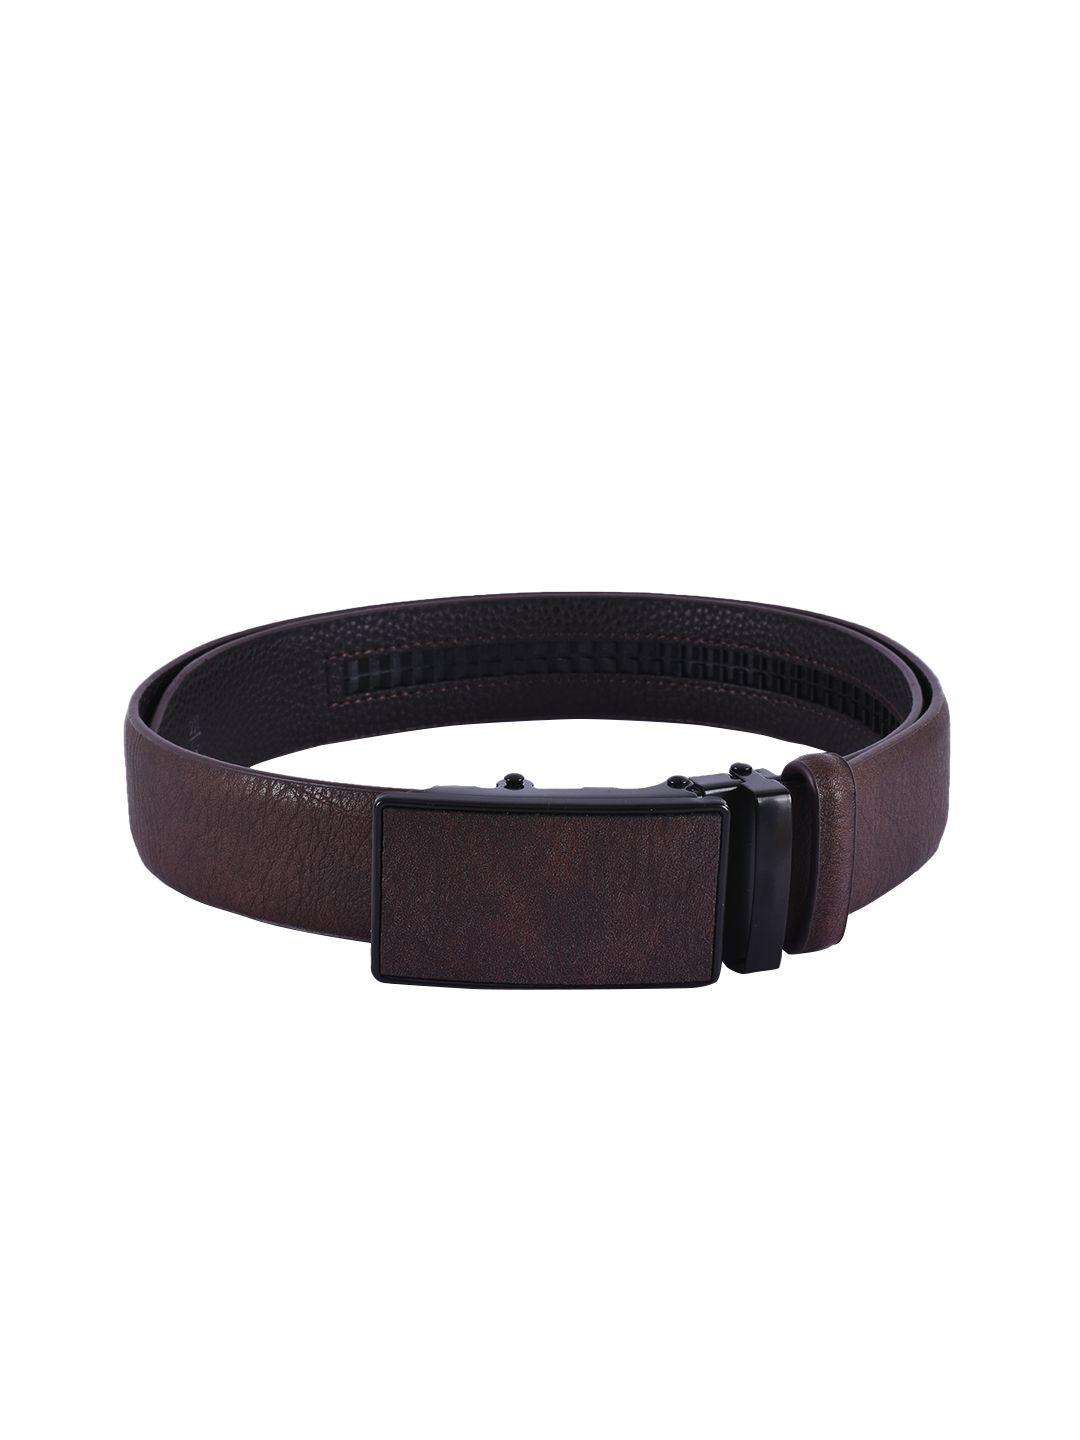 buckleup men brown solid leather belt